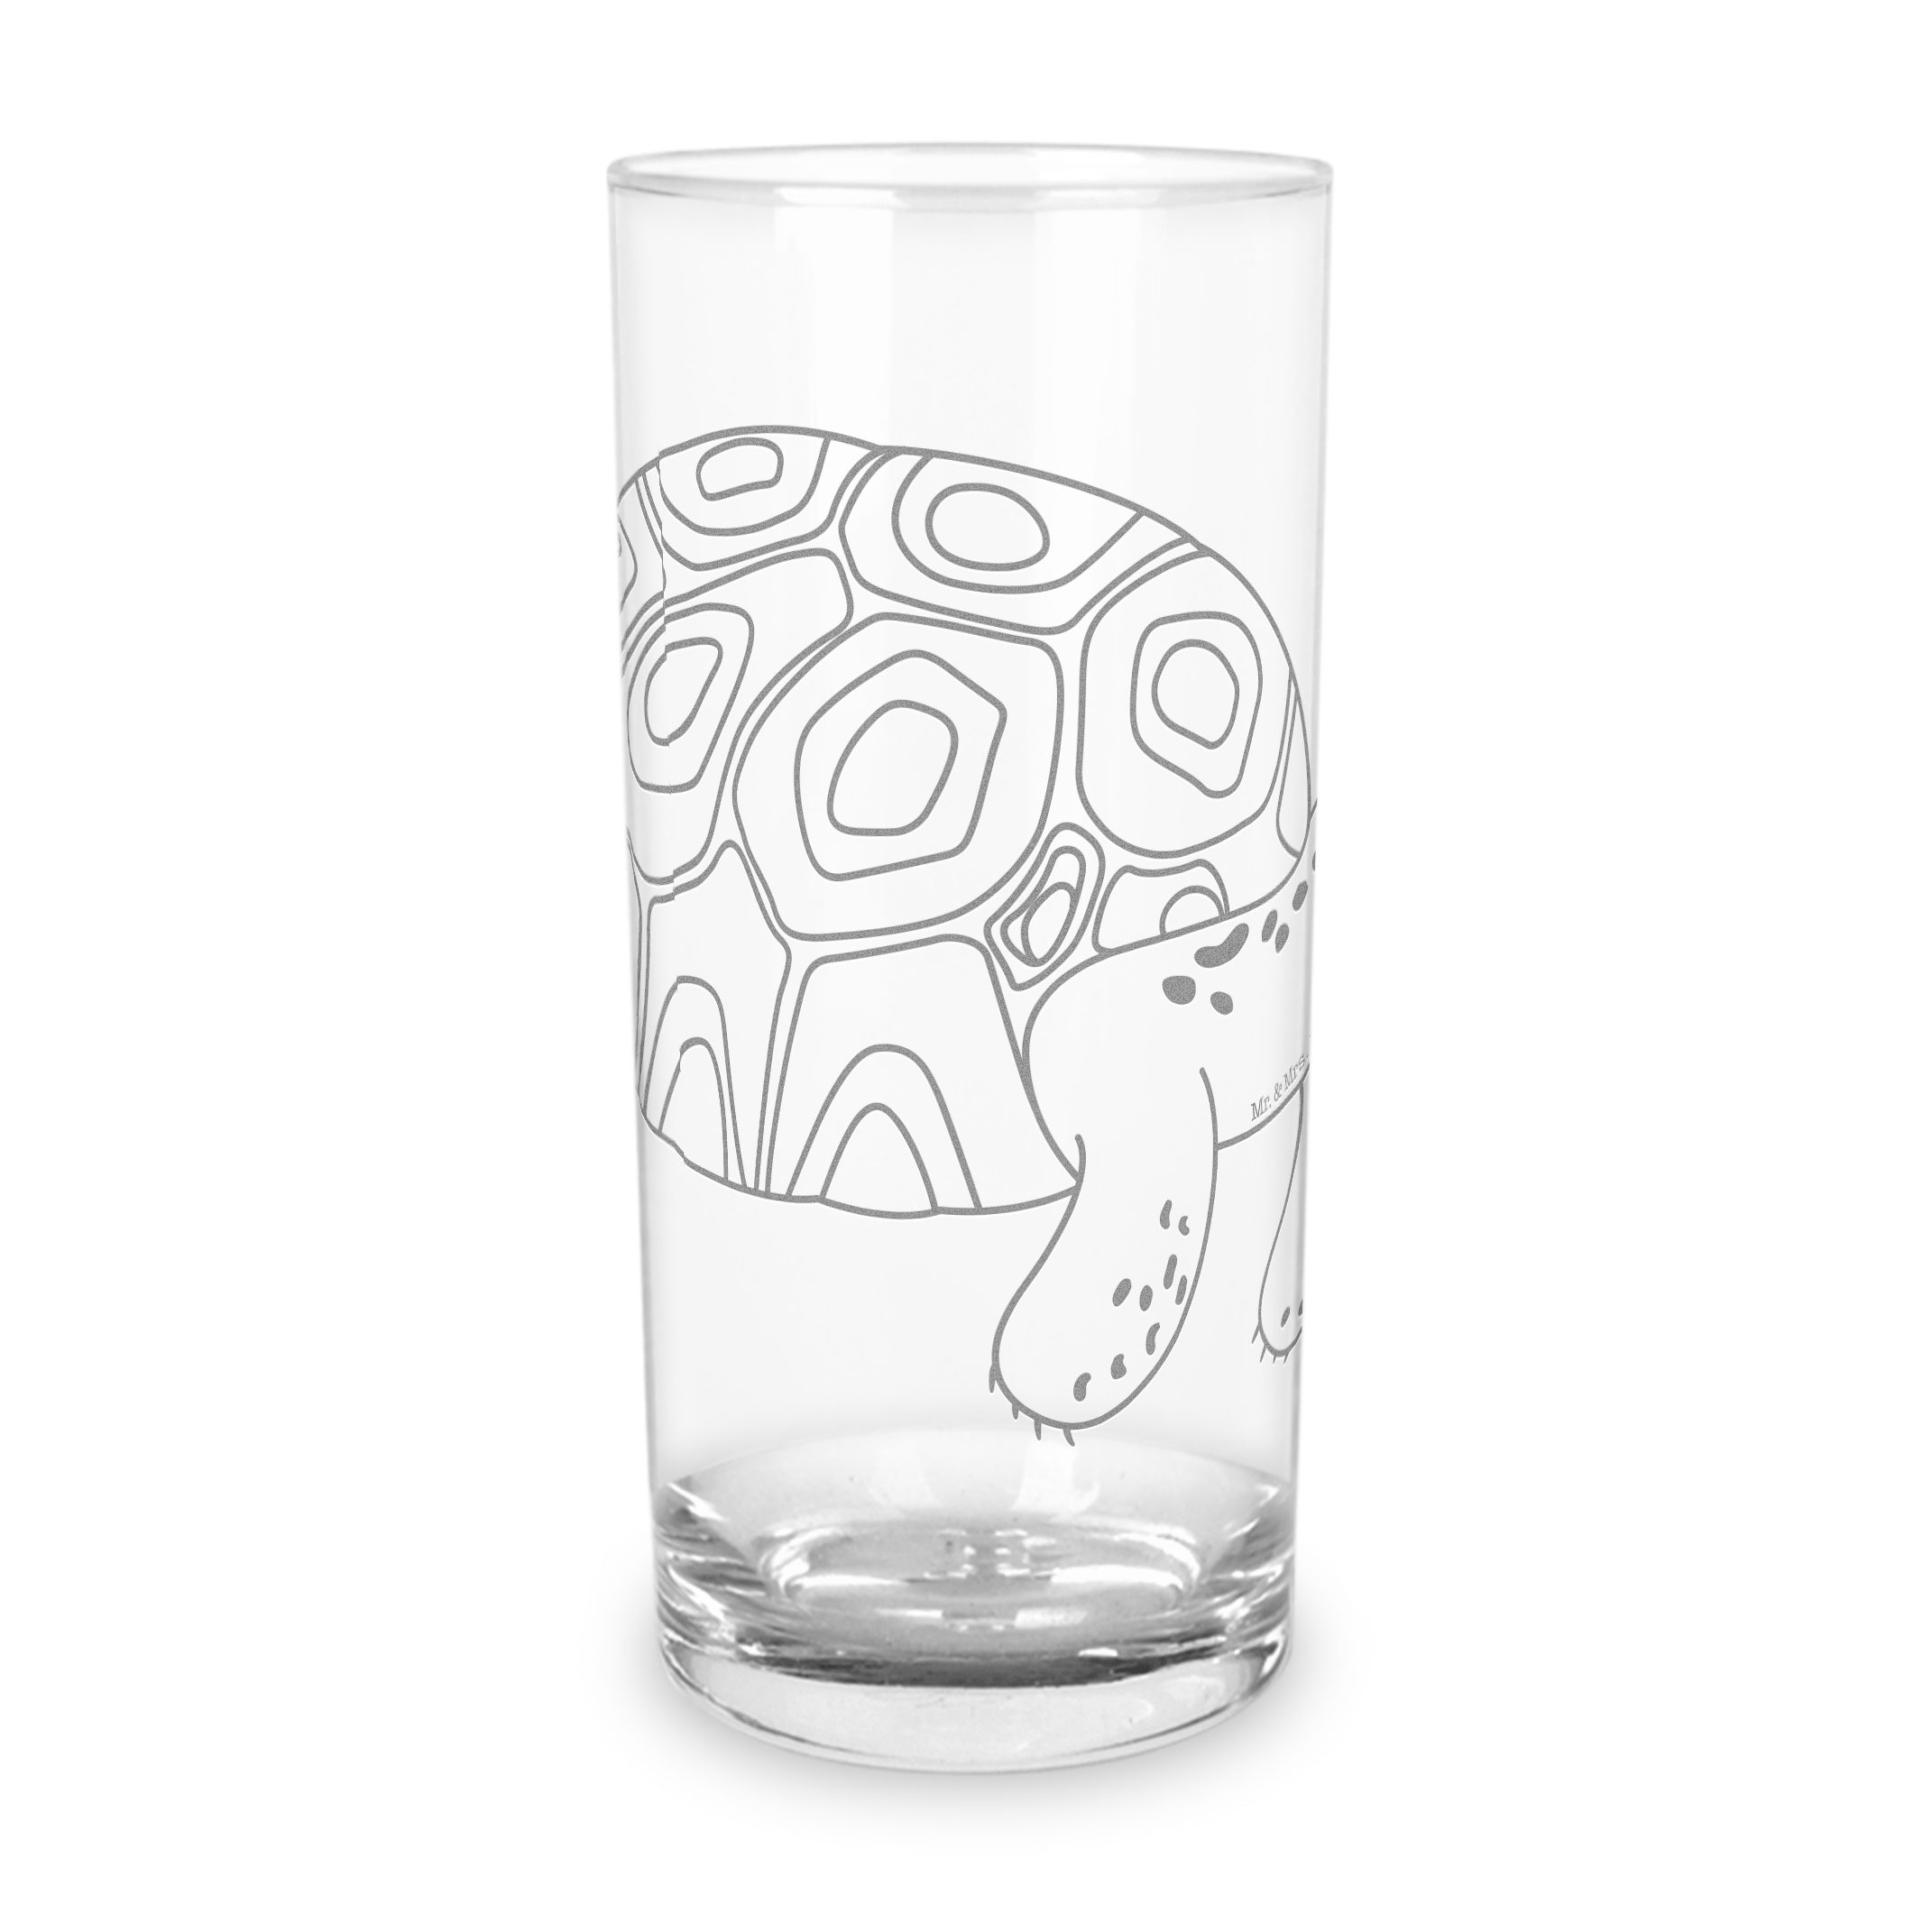 Mr. & Mrs. Panda Glas 200 ml Schildkröte Marschieren - Transparent - Geschenk, Reiselust, g, Premium Glas, Stilvolle Gravur